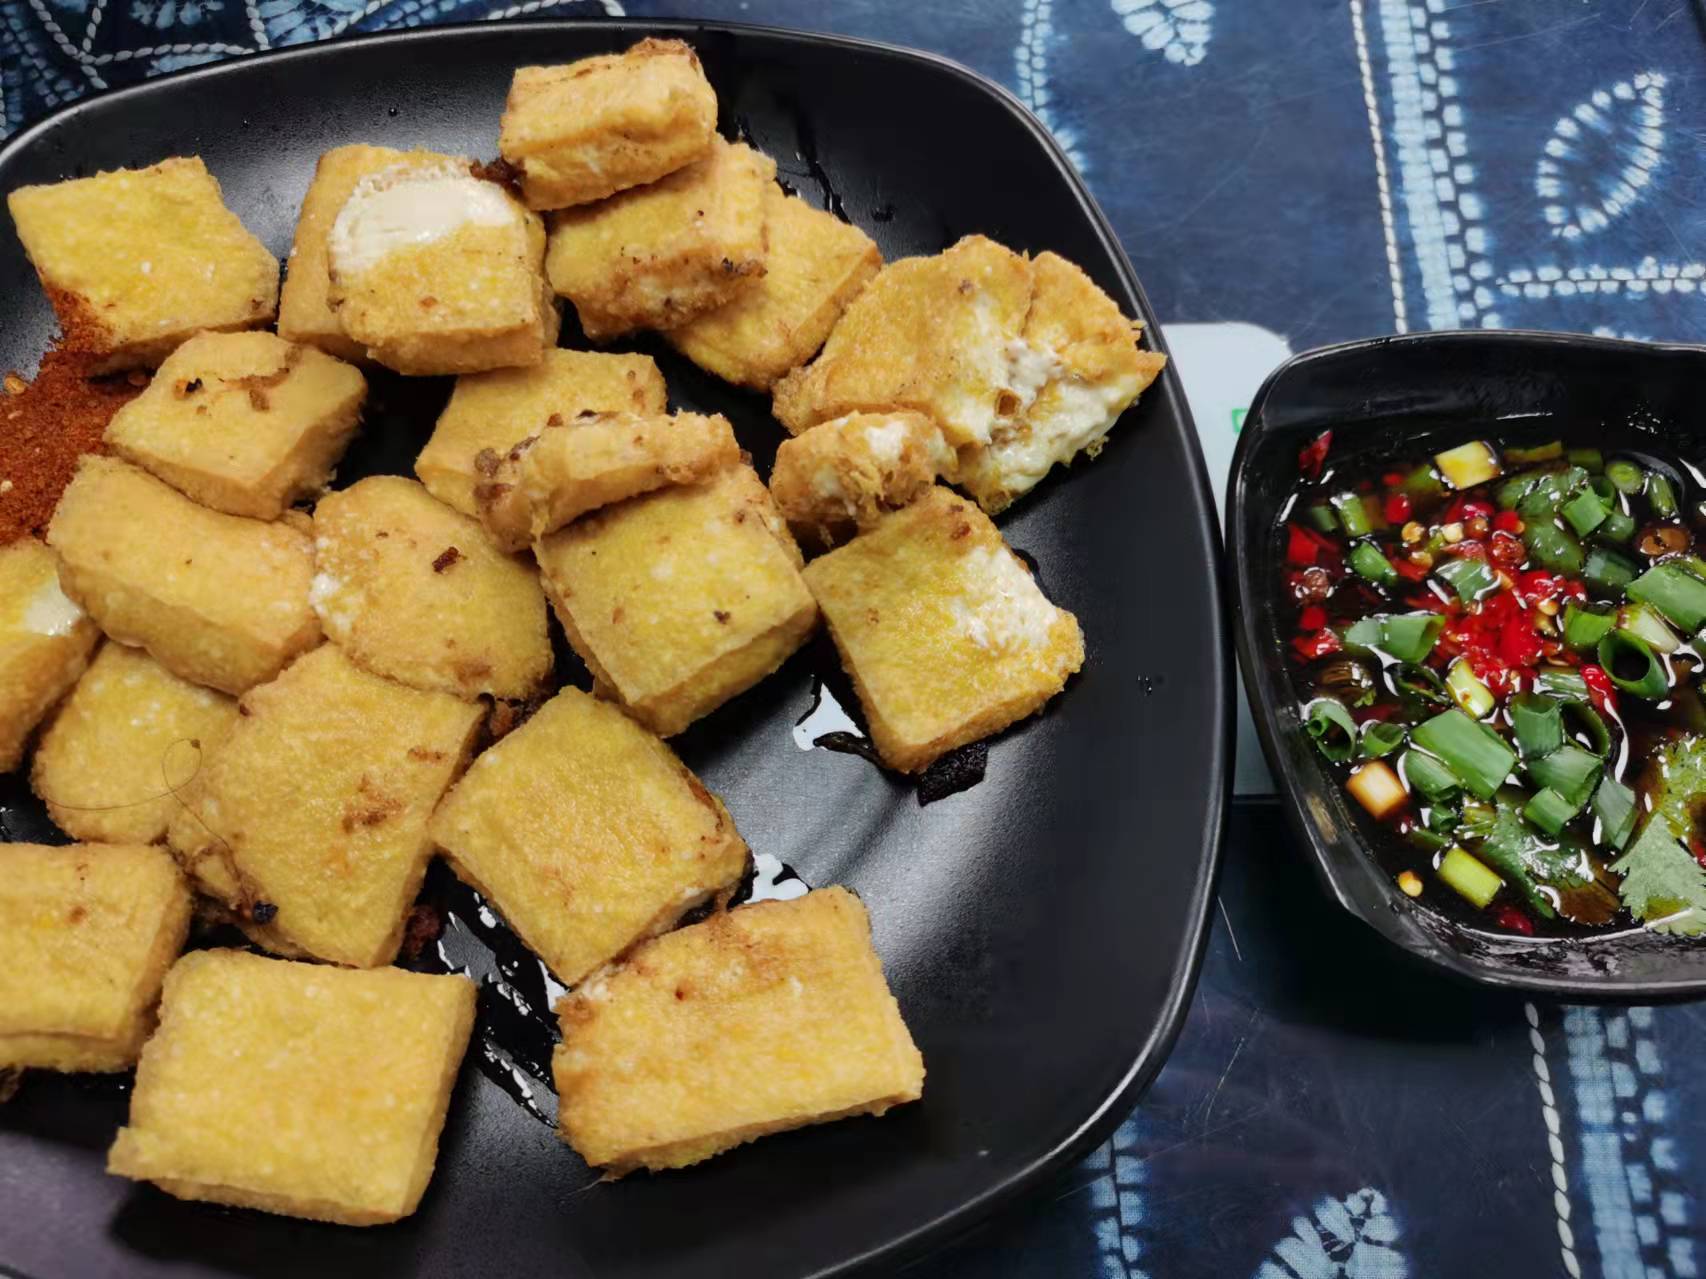 今日美食分享:包浆豆腐